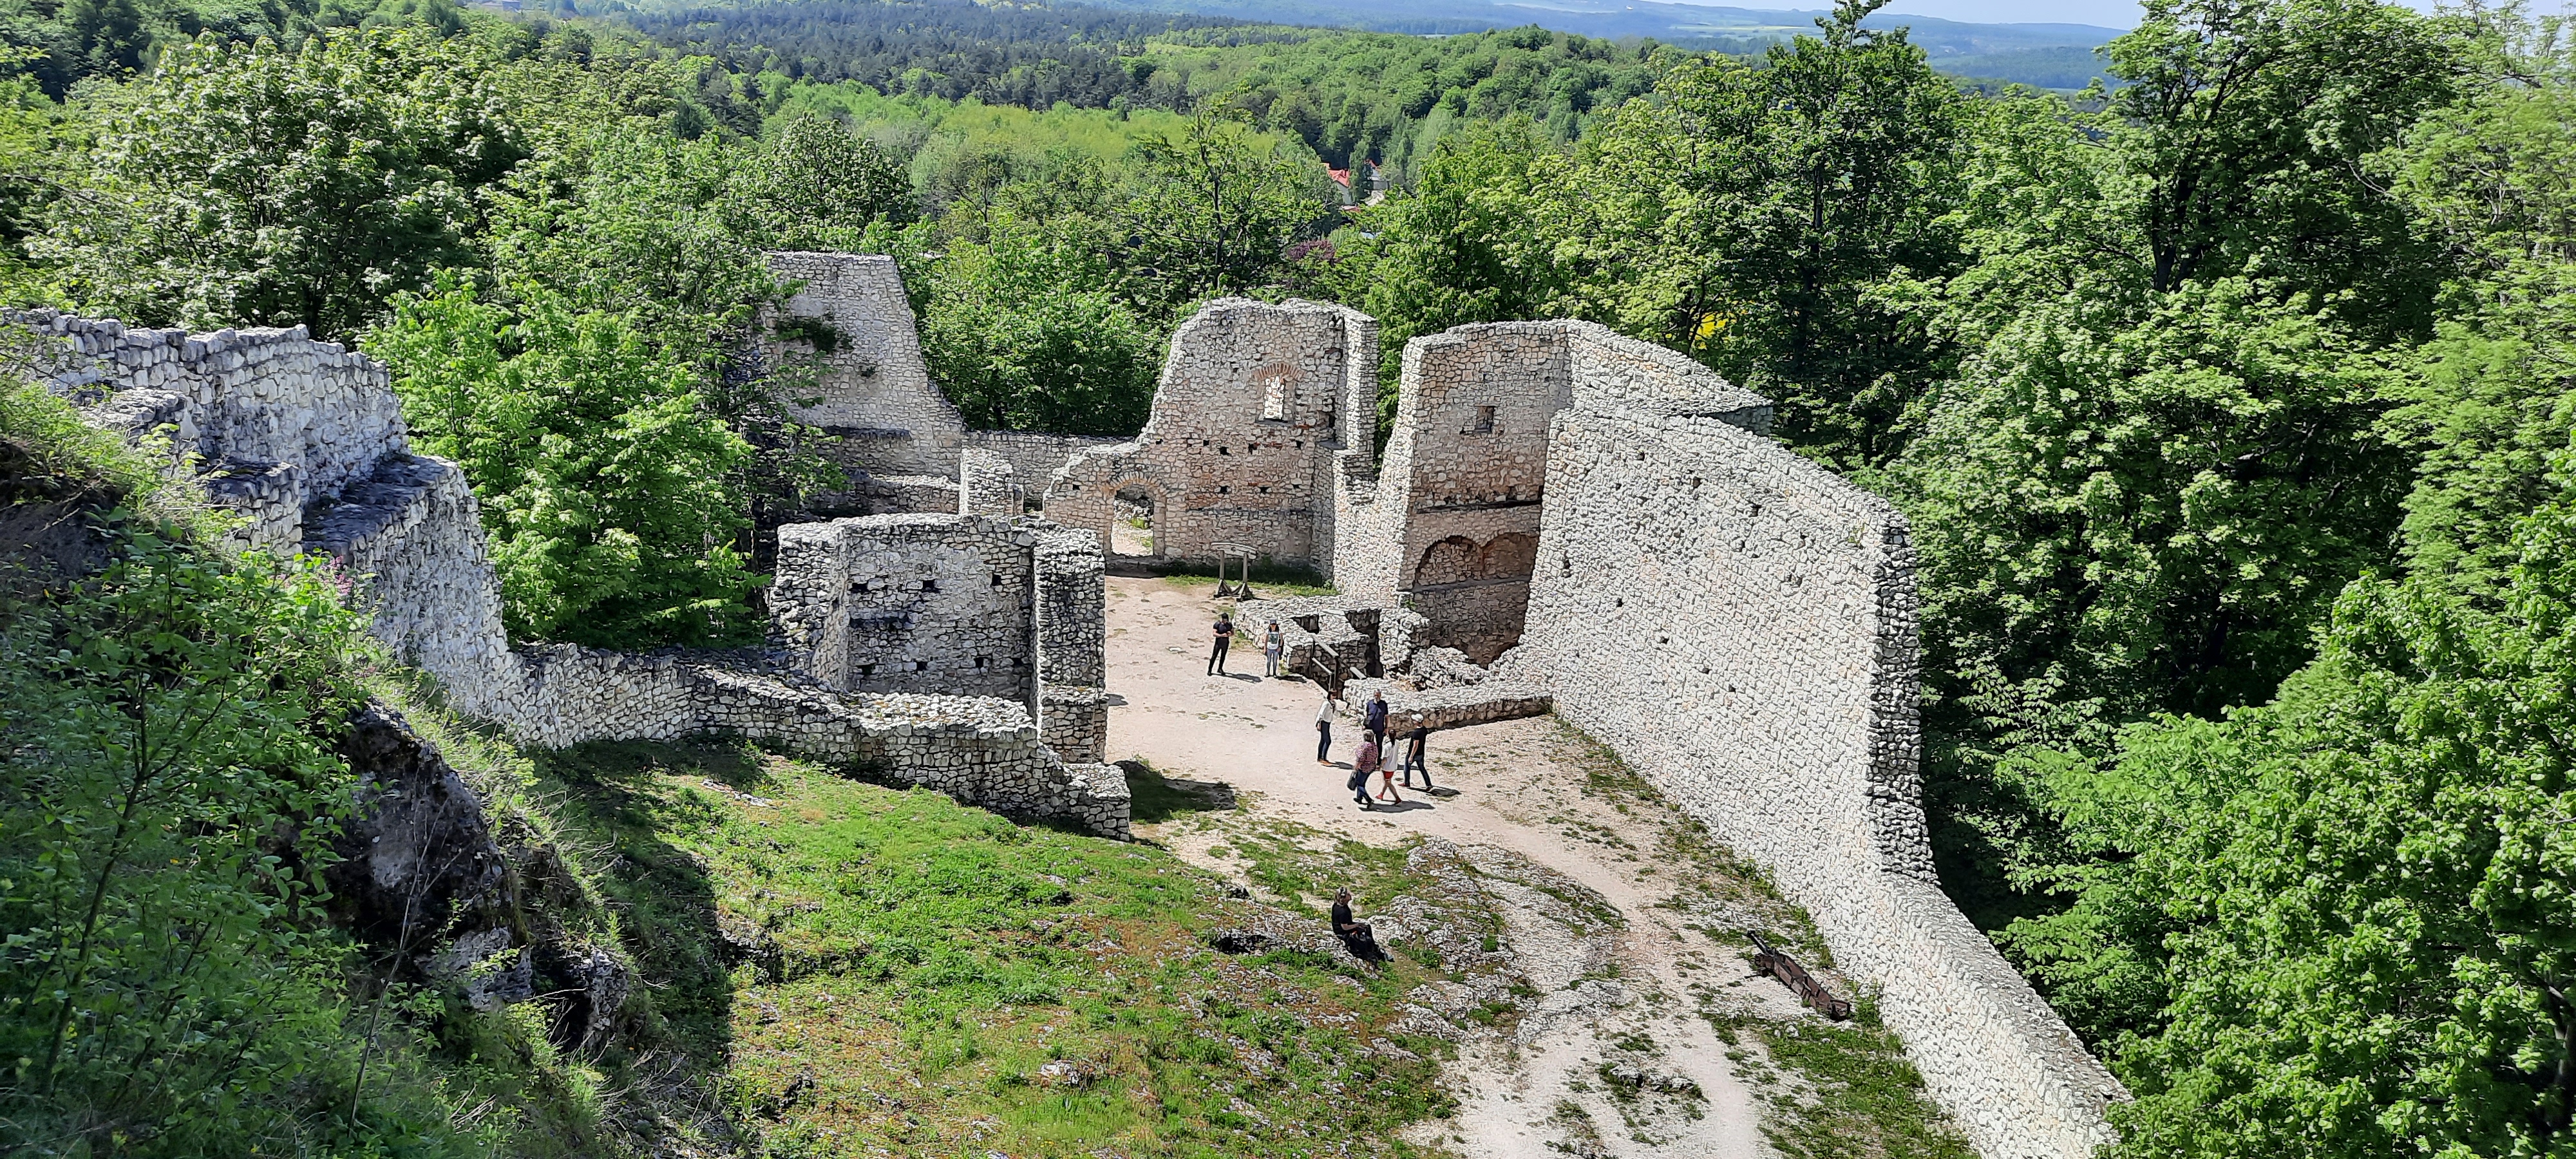 Zamek Pilcza i rezerwat przyrody Smoleń – atrakcje Jury Krakowsko-Częstochowskiej